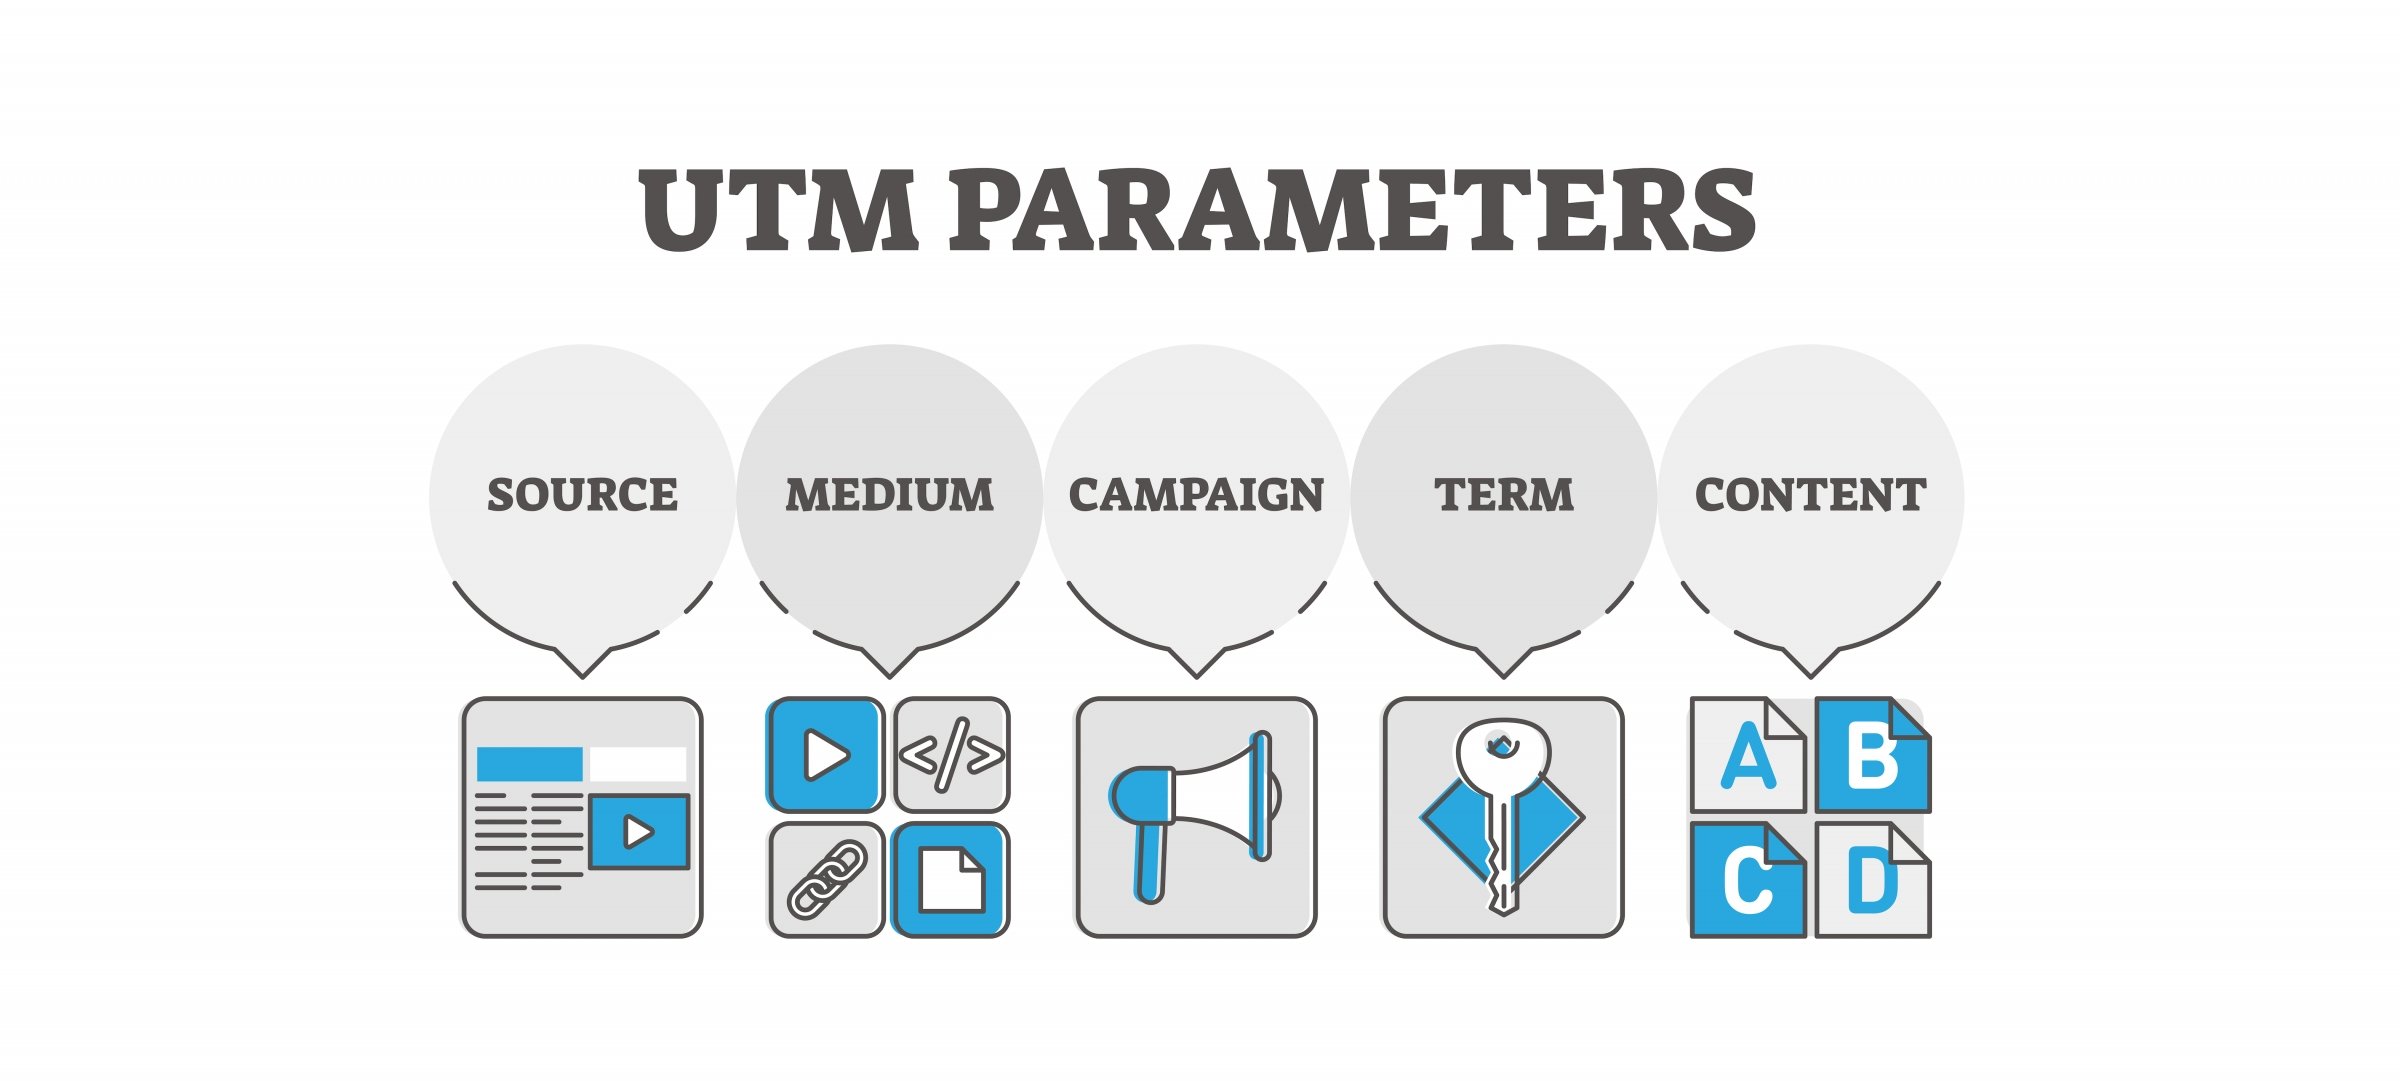 UTM Parameters, Source, Medium, Campaign, Term, Content